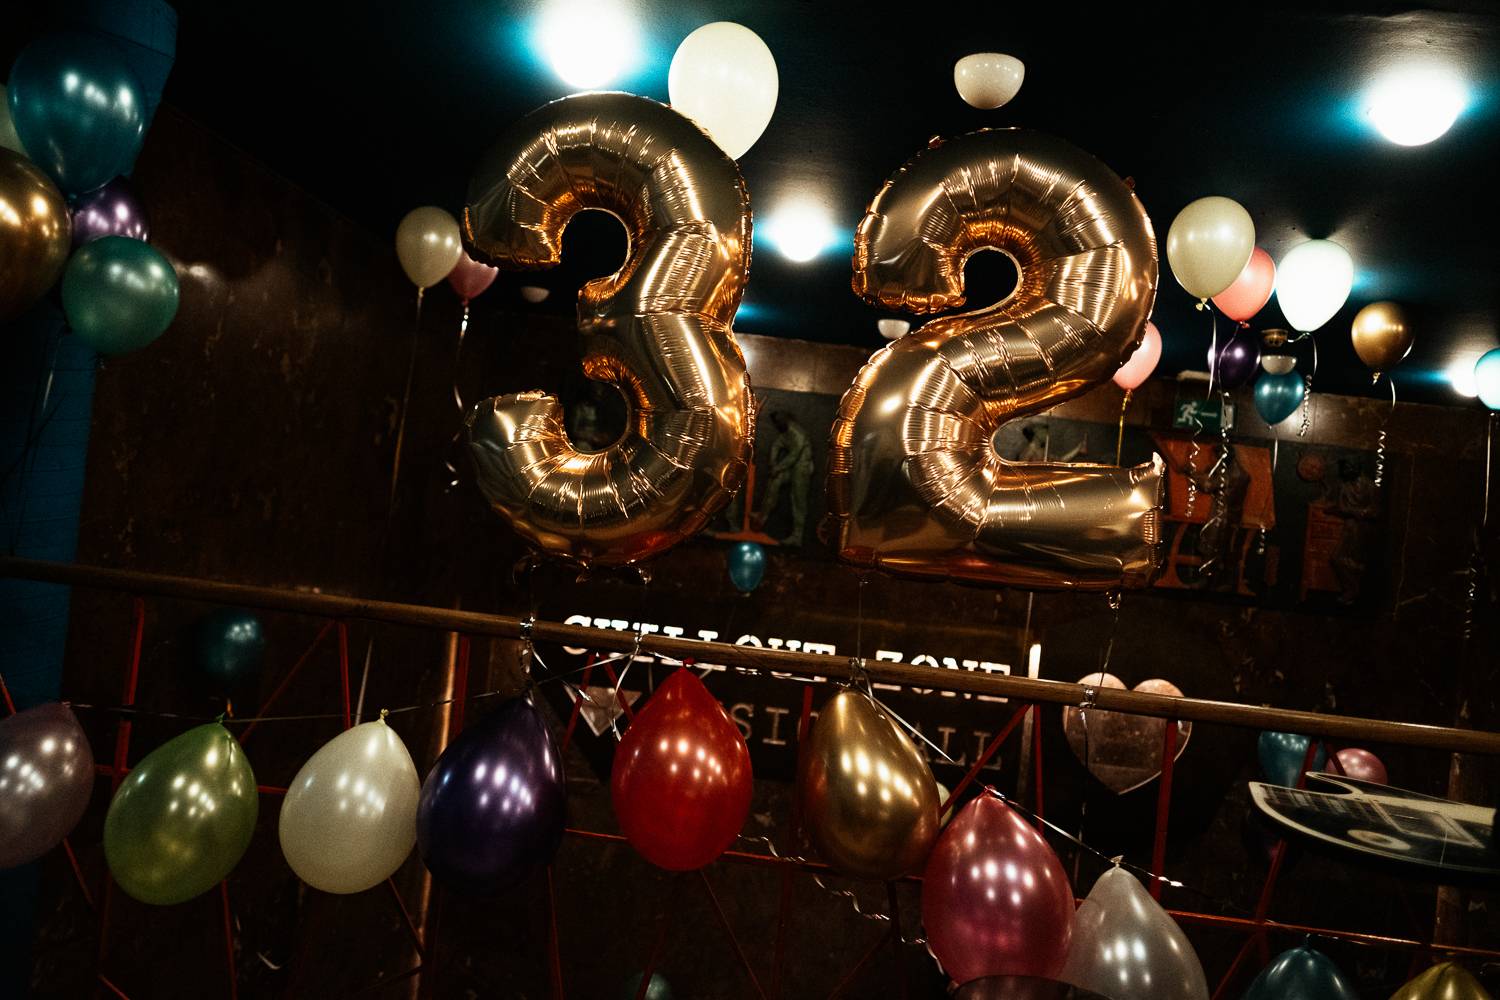 Rock Café slavilo 32. narozeniny, přáli mu 7krát3 a The Valentines